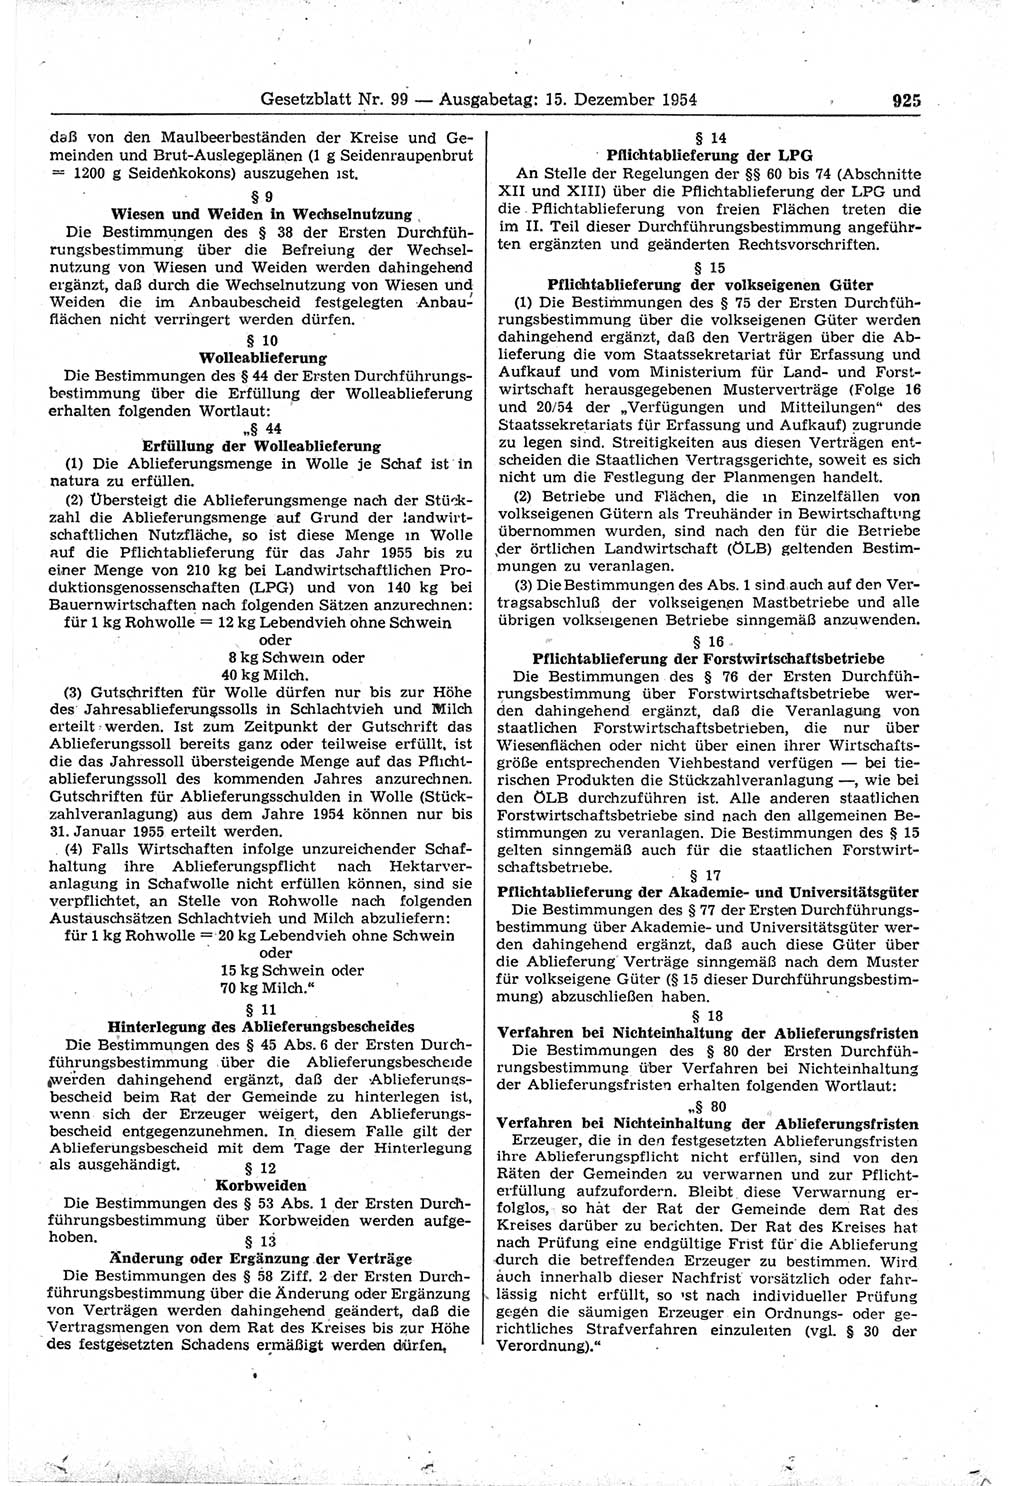 Gesetzblatt (GBl.) der Deutschen Demokratischen Republik (DDR) 1954, Seite 925 (GBl. DDR 1954, S. 925)